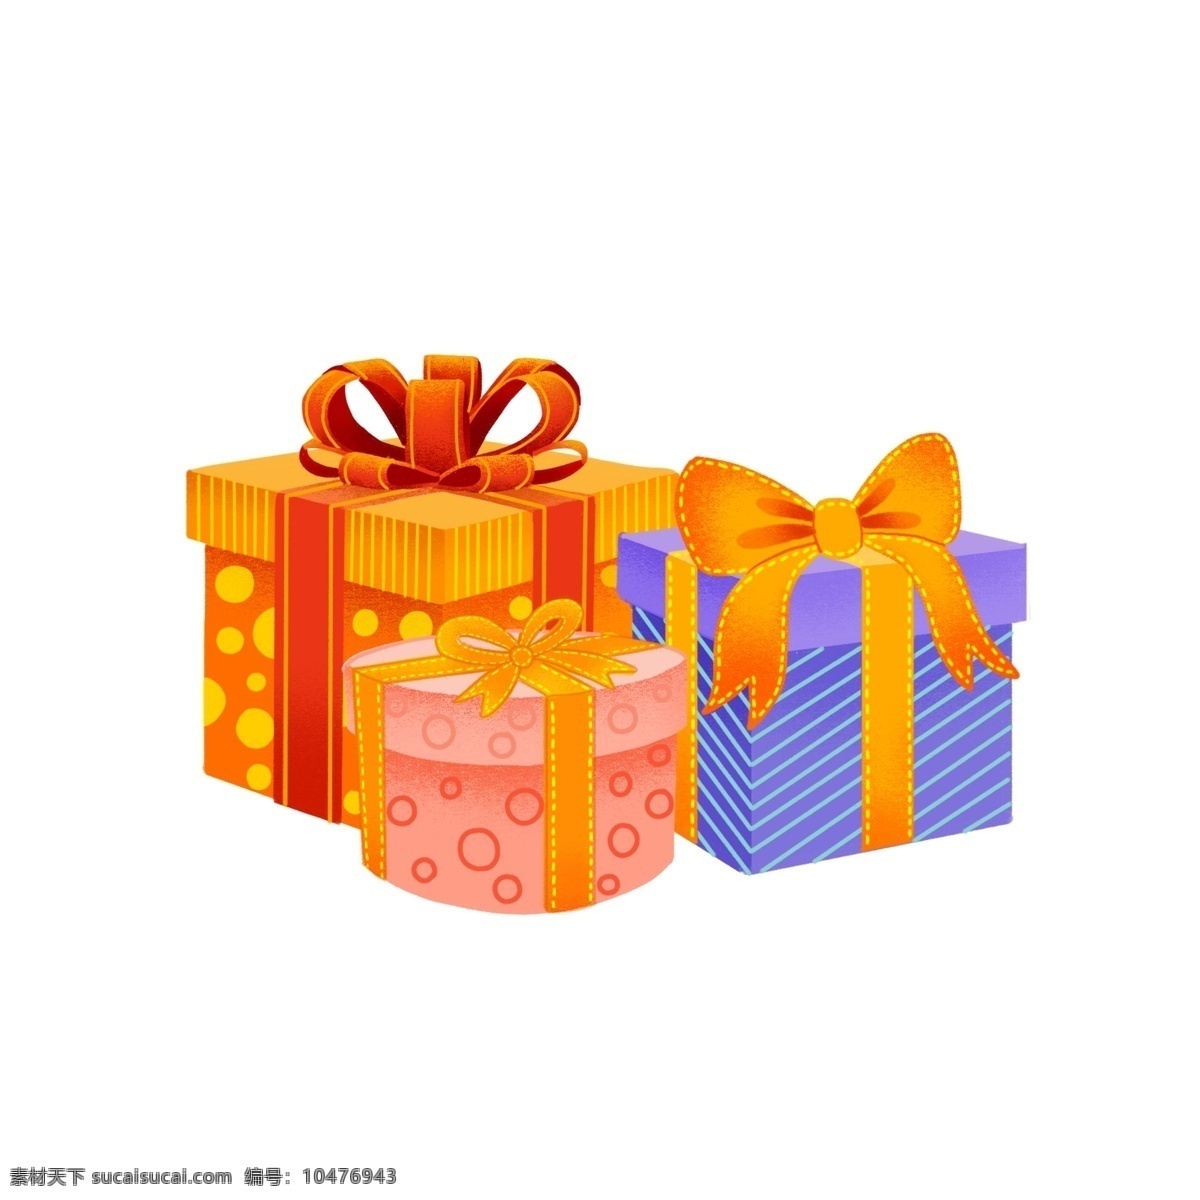 手绘 平安夜 圣诞节 礼物 盒 精品 元素 蝴蝶结 可爱 小清新 装饰 礼物盒 可商用 卡通 节日 新年